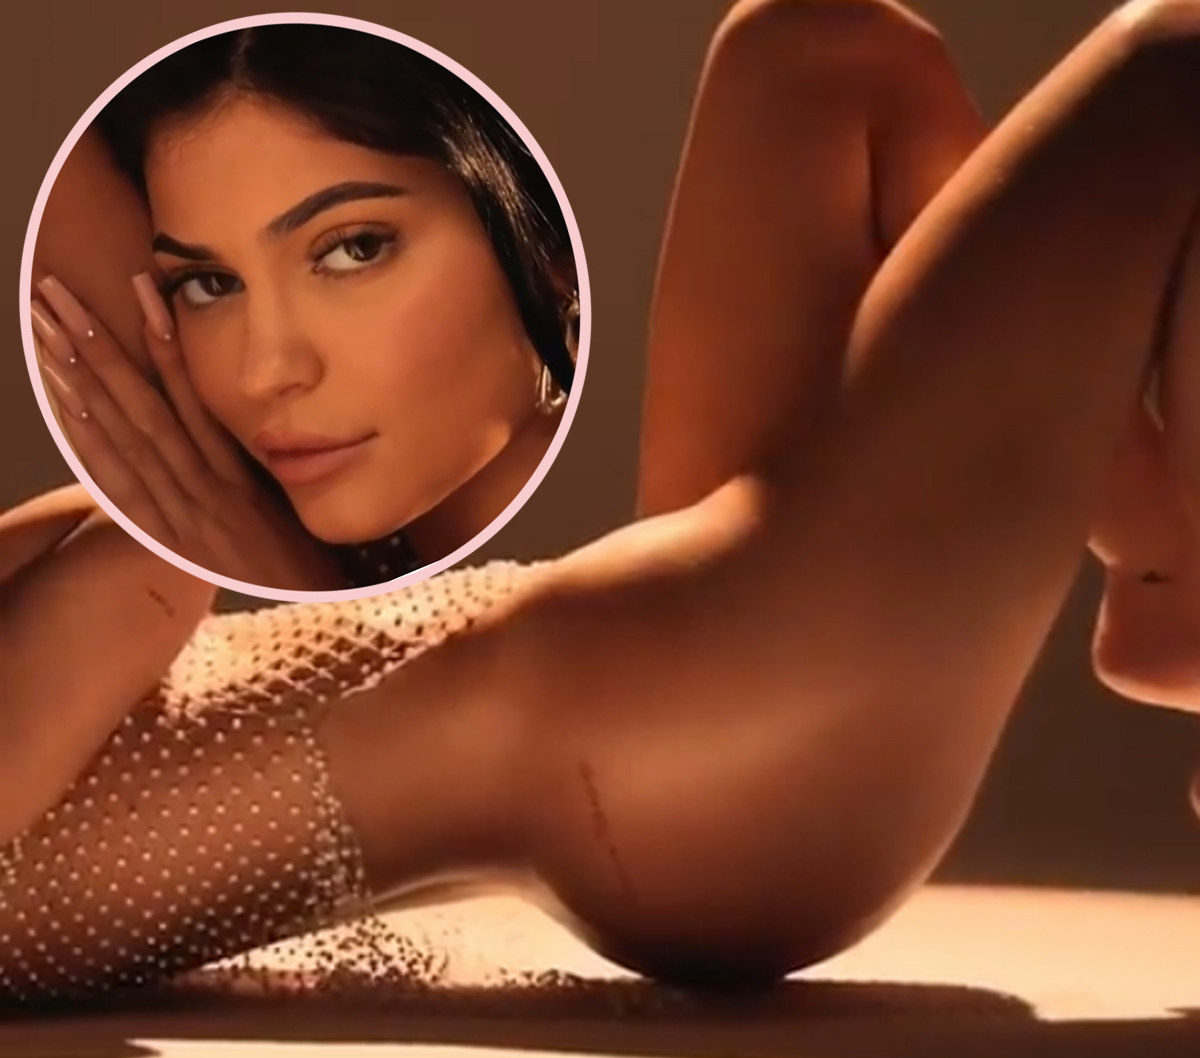 Kylie Jenner Body Nude